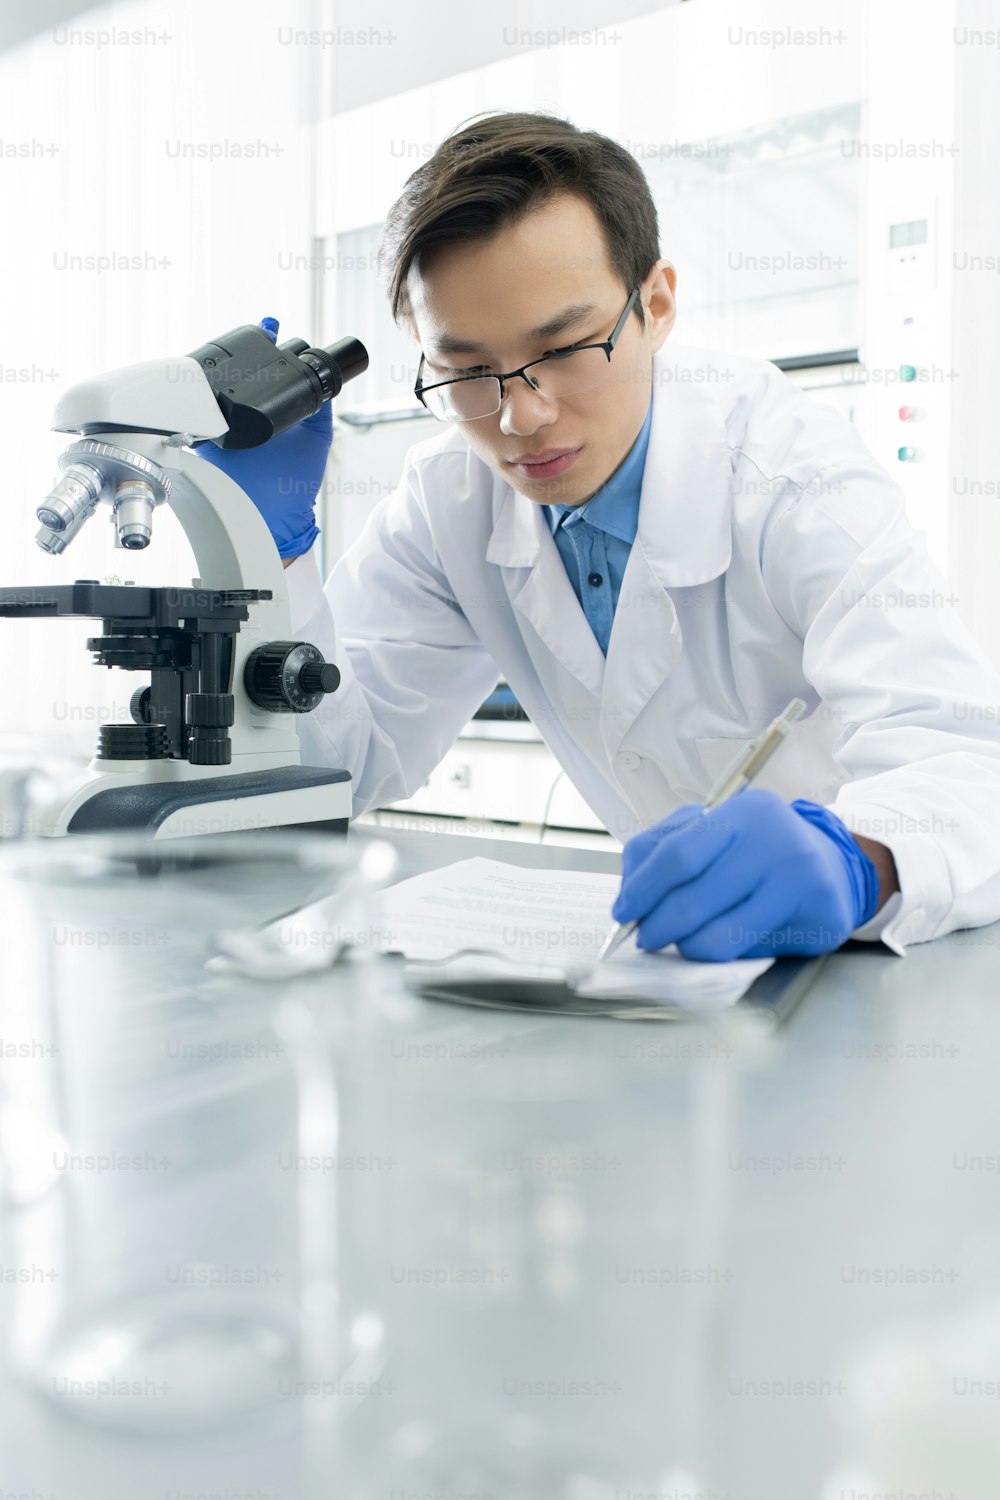 장갑을 끼고 흰 코트를 입은 중국 남성 실험실 직원이 책상을 구부리고 현미경으로 새로운 바이러스를 연구하면서 메모장에 메모를 하고 있다